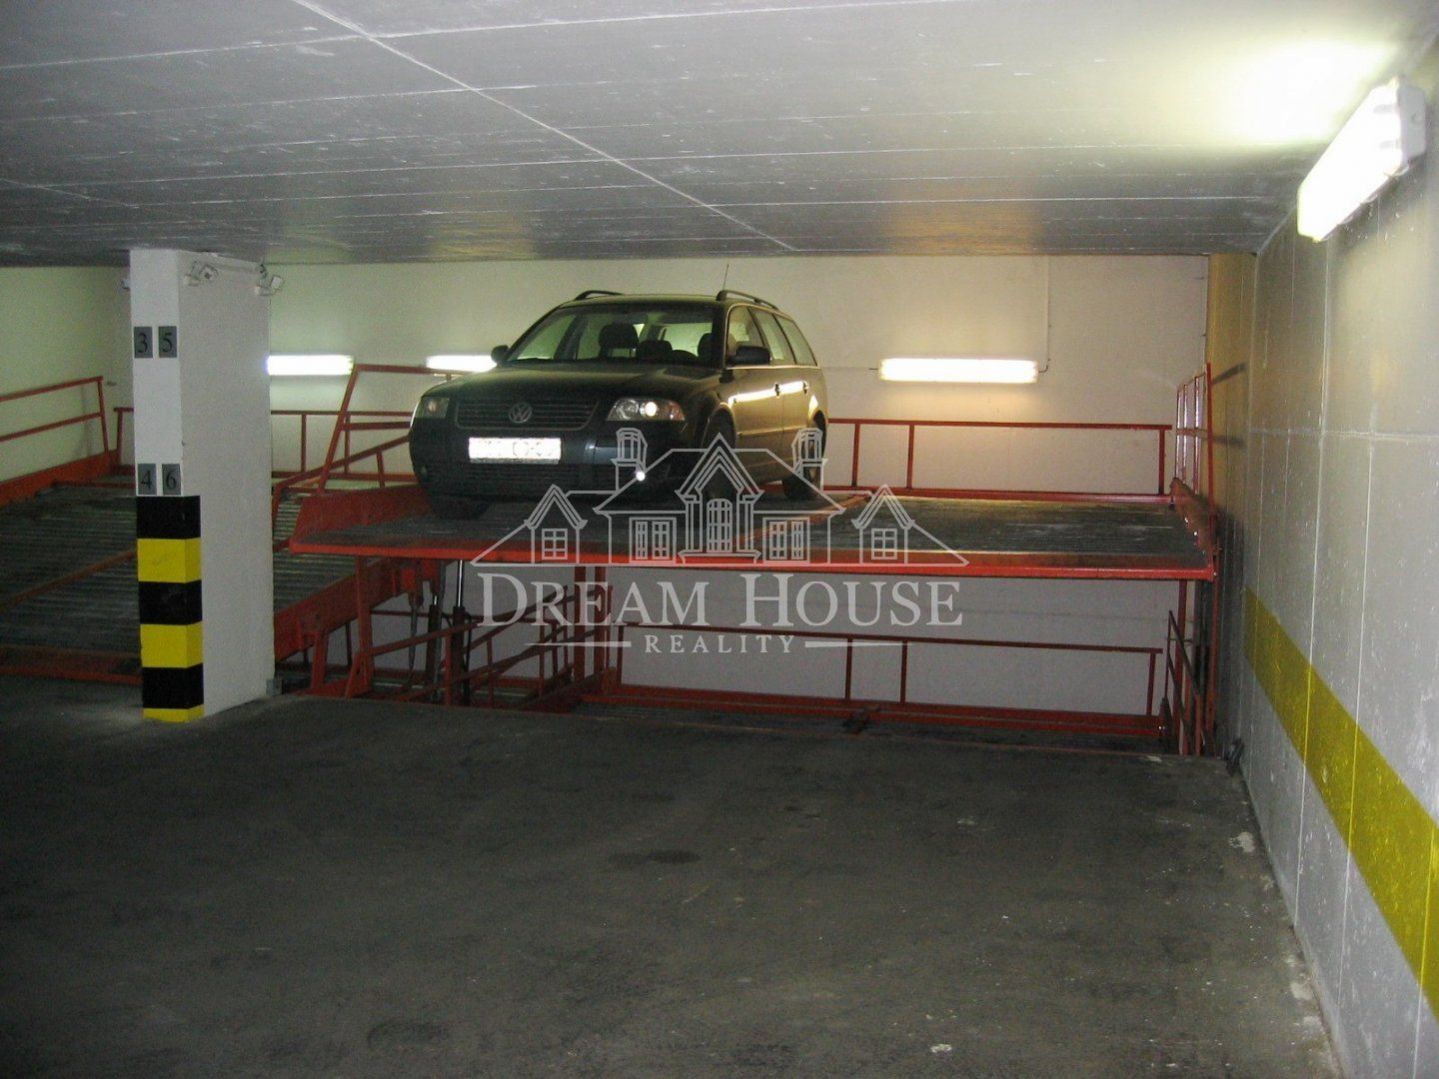 Pronájem parkovacího místa v podzemní garáži, Praha 2 - Vinohrady, v zakladači, obrázek č. 2